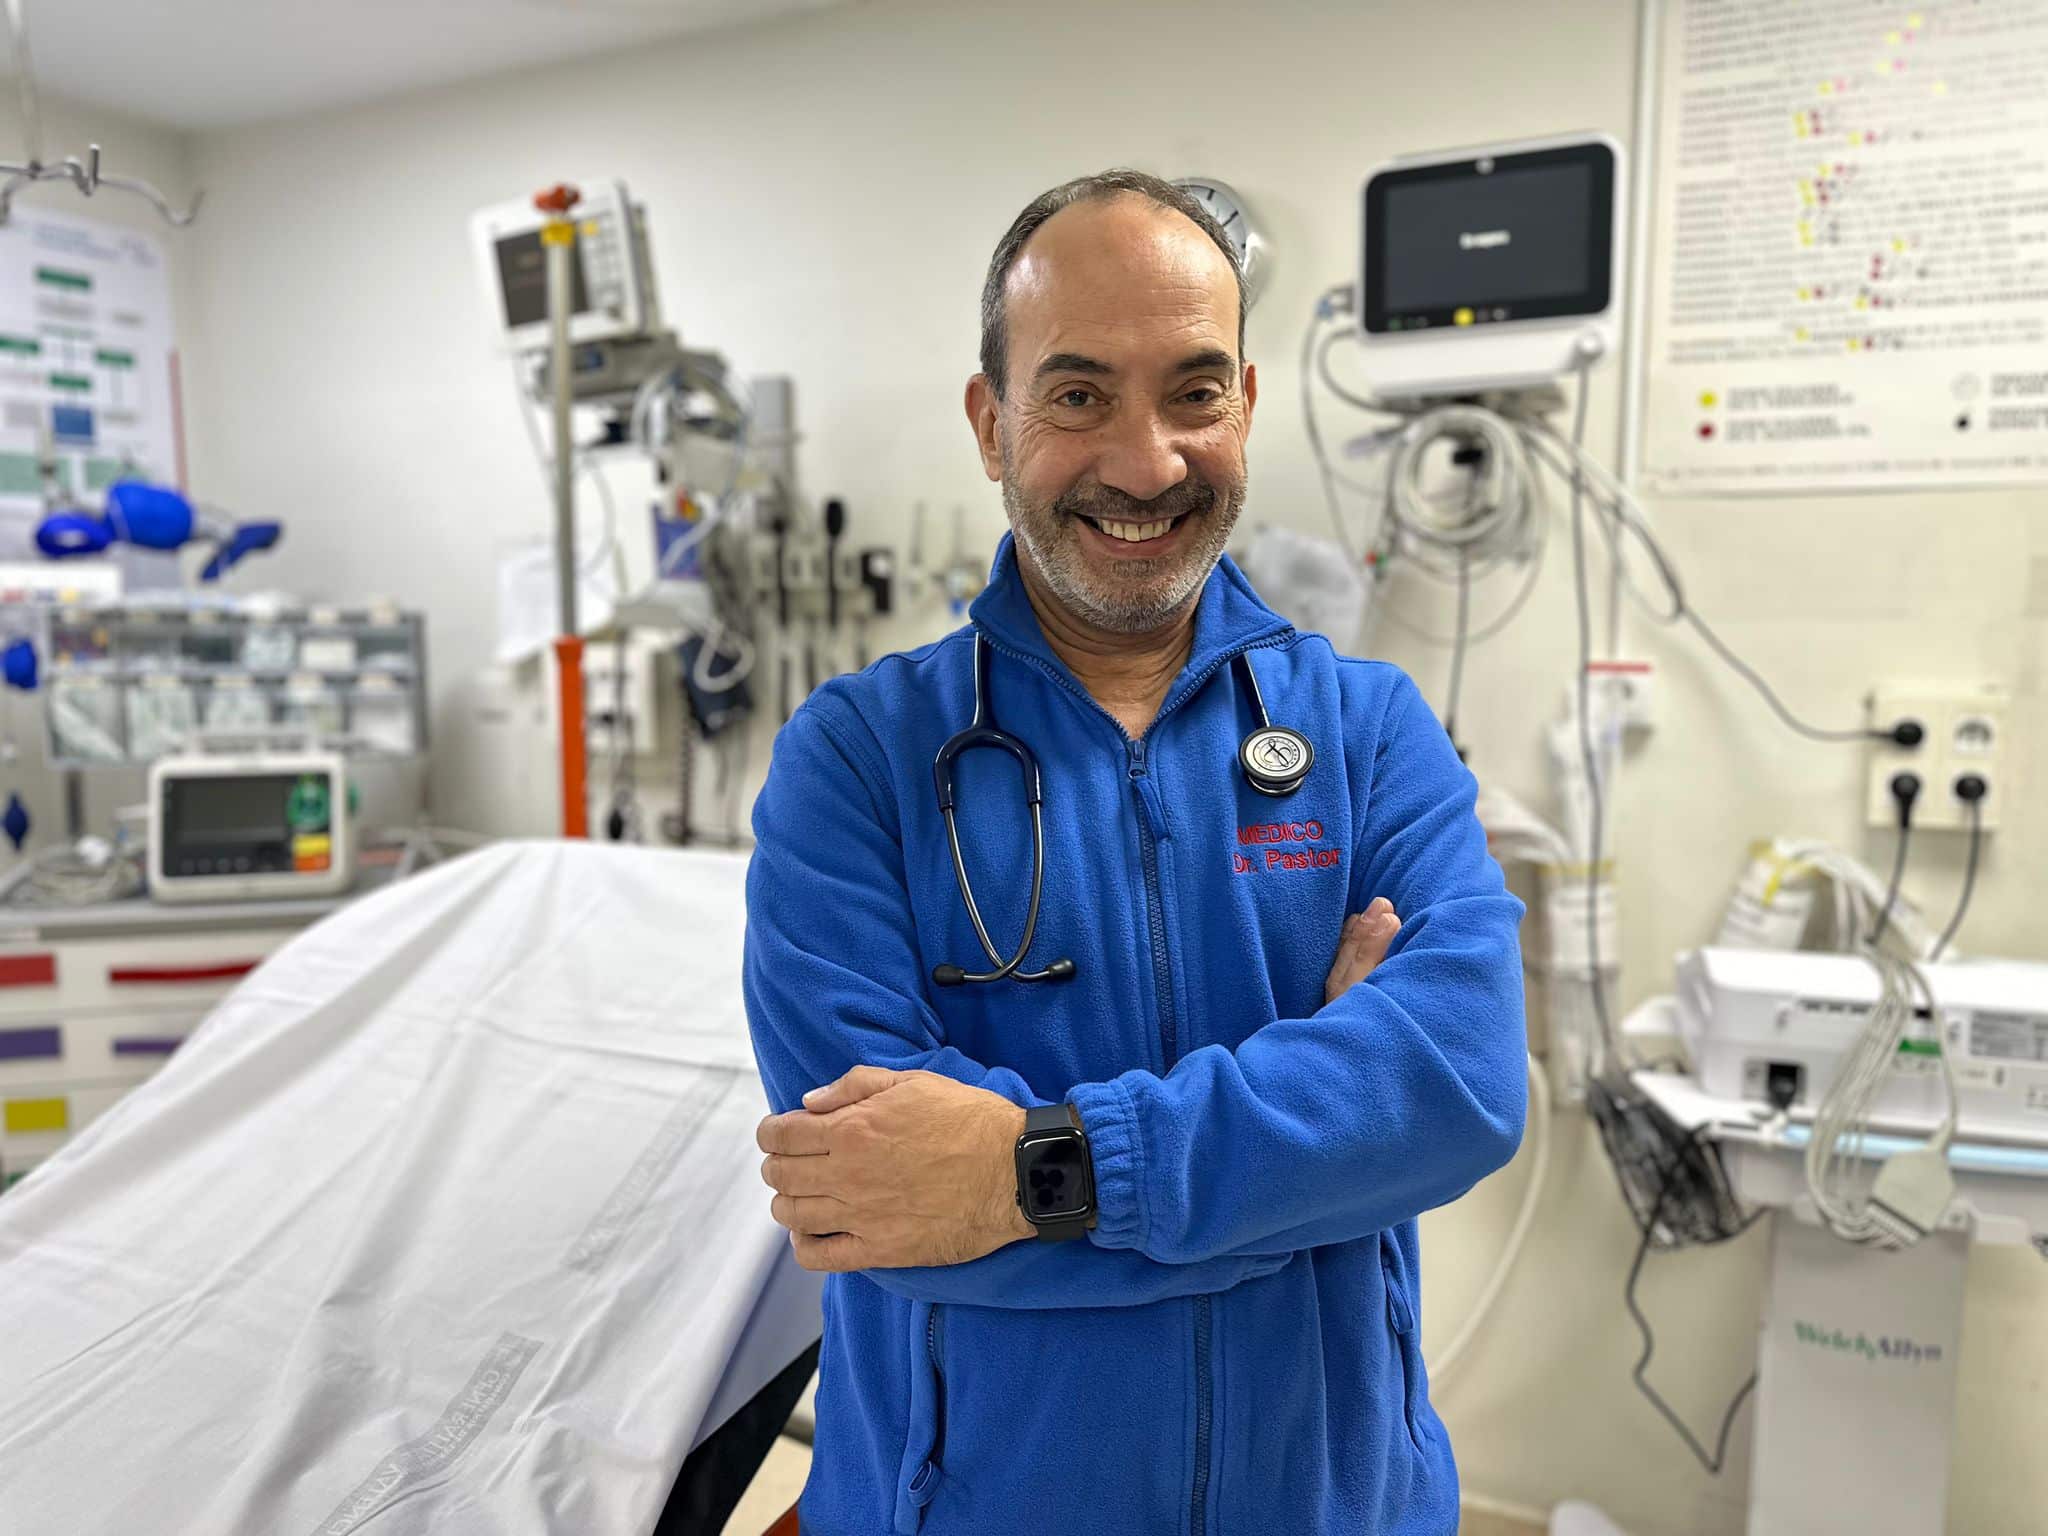 Sanidad designa nuevo gerente del Departamento de Salud de La Marina Baixa